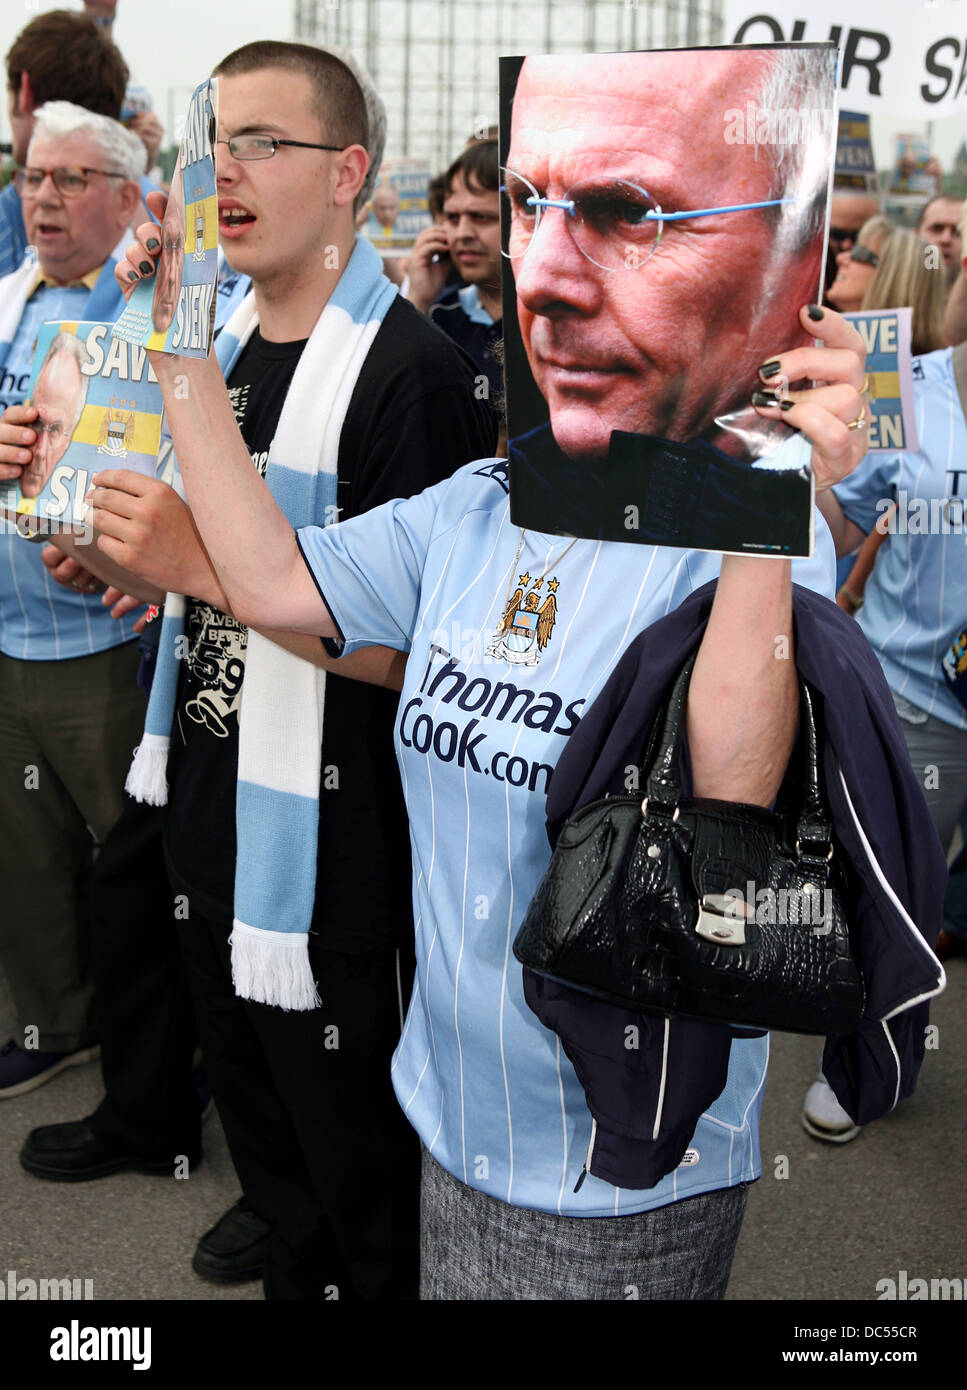 Manchester City tifosi mostrano il loro supporto per Sven al di fuori della City of Manchester Stadium. Foto: Chris Bull Foto Stock